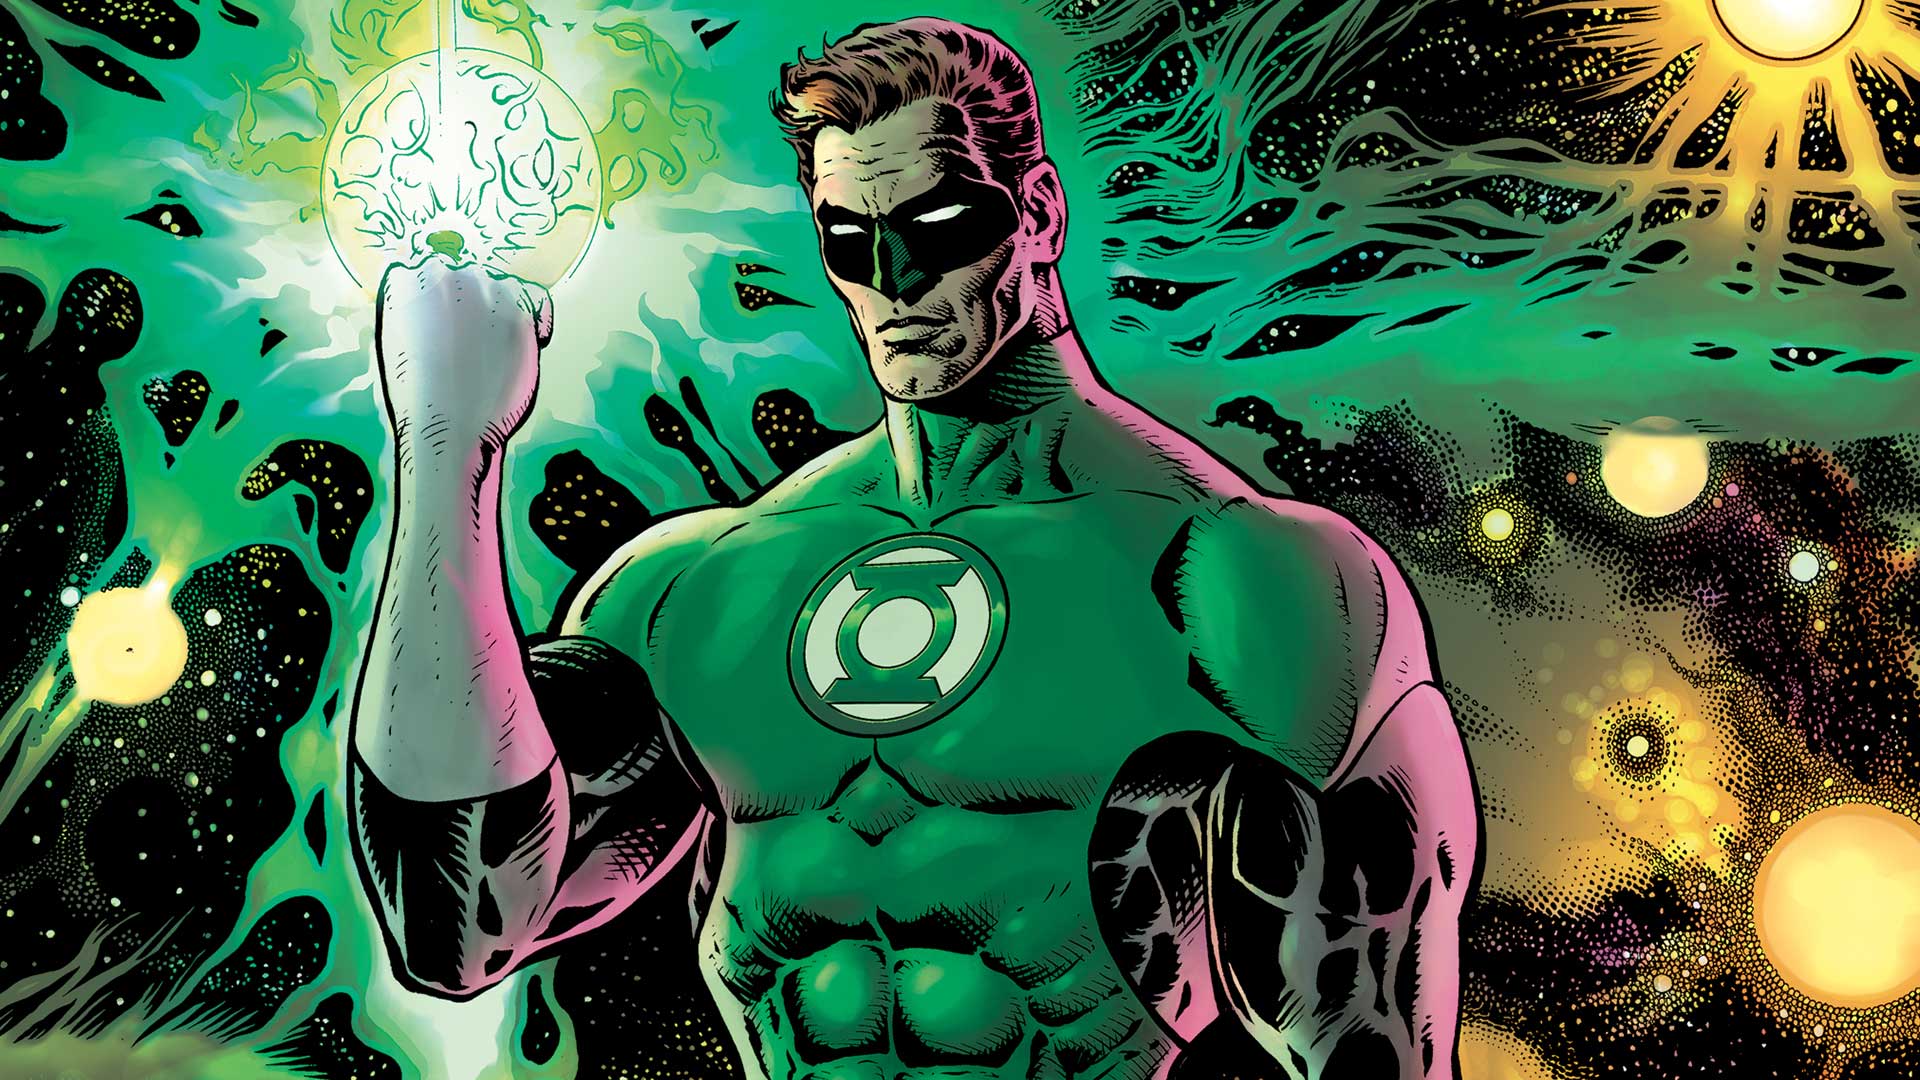 ¡Una excelente noticia! Preparan serie live action de Green Lantern